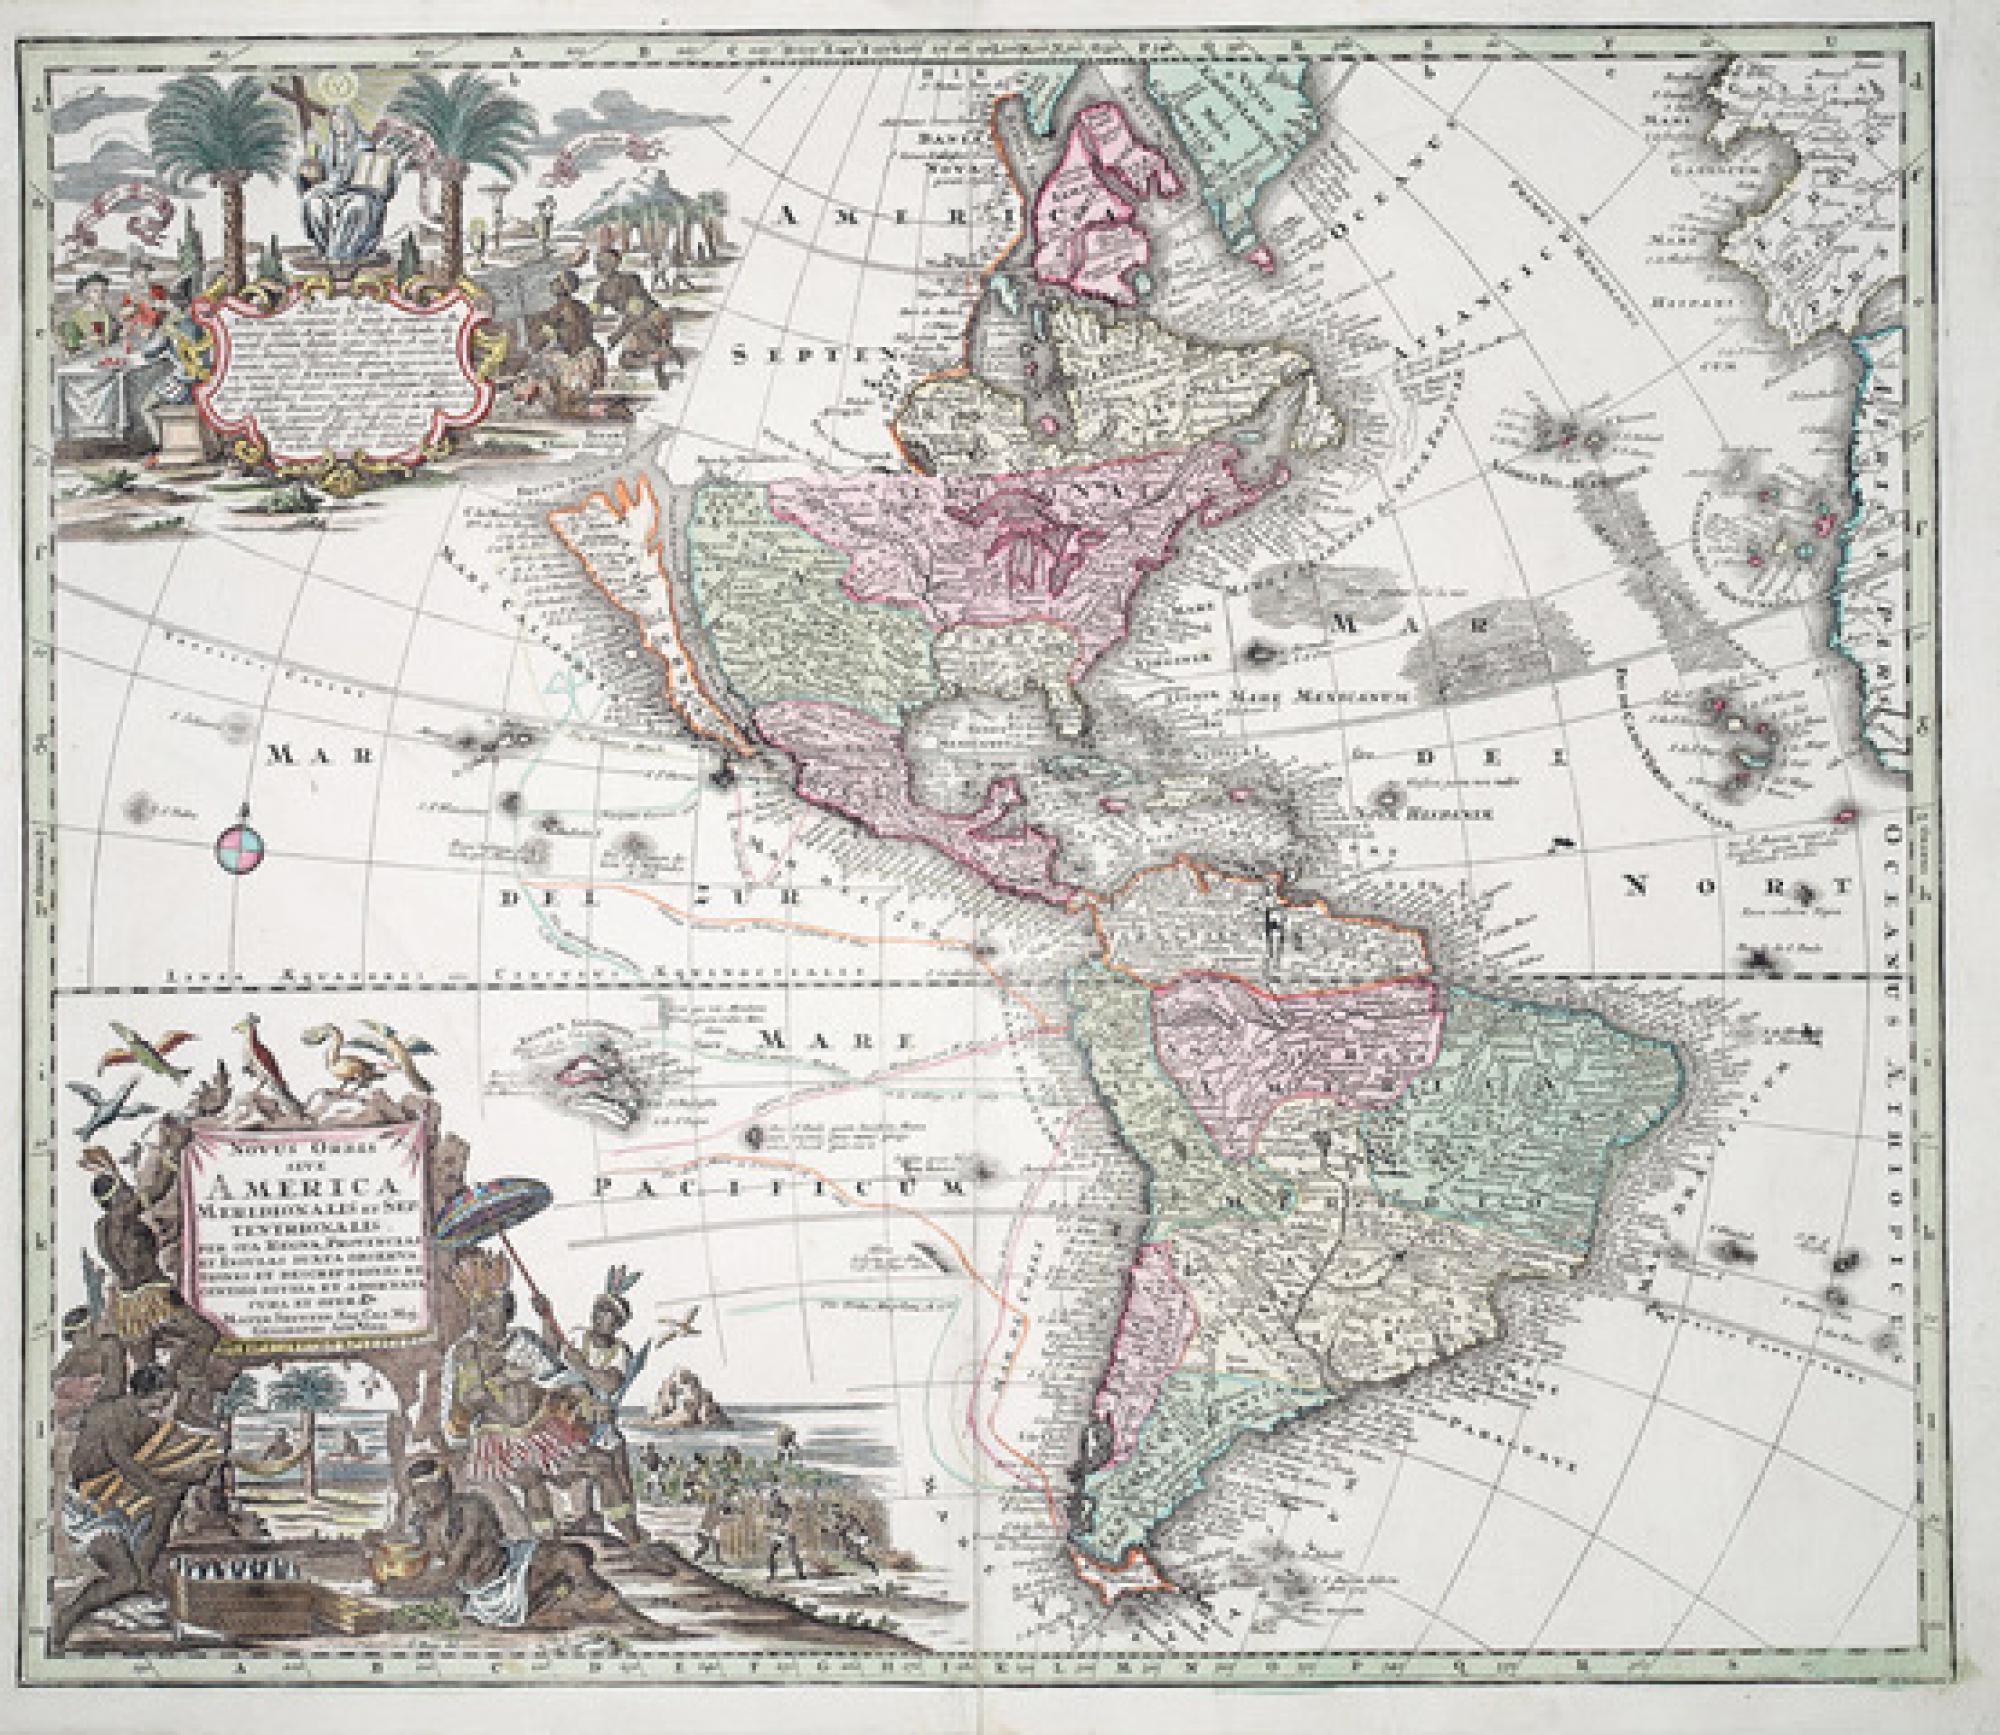 Atlas, cartes géographiques anciennes - Estimation et expertise gratuite à Paris et région parisienne